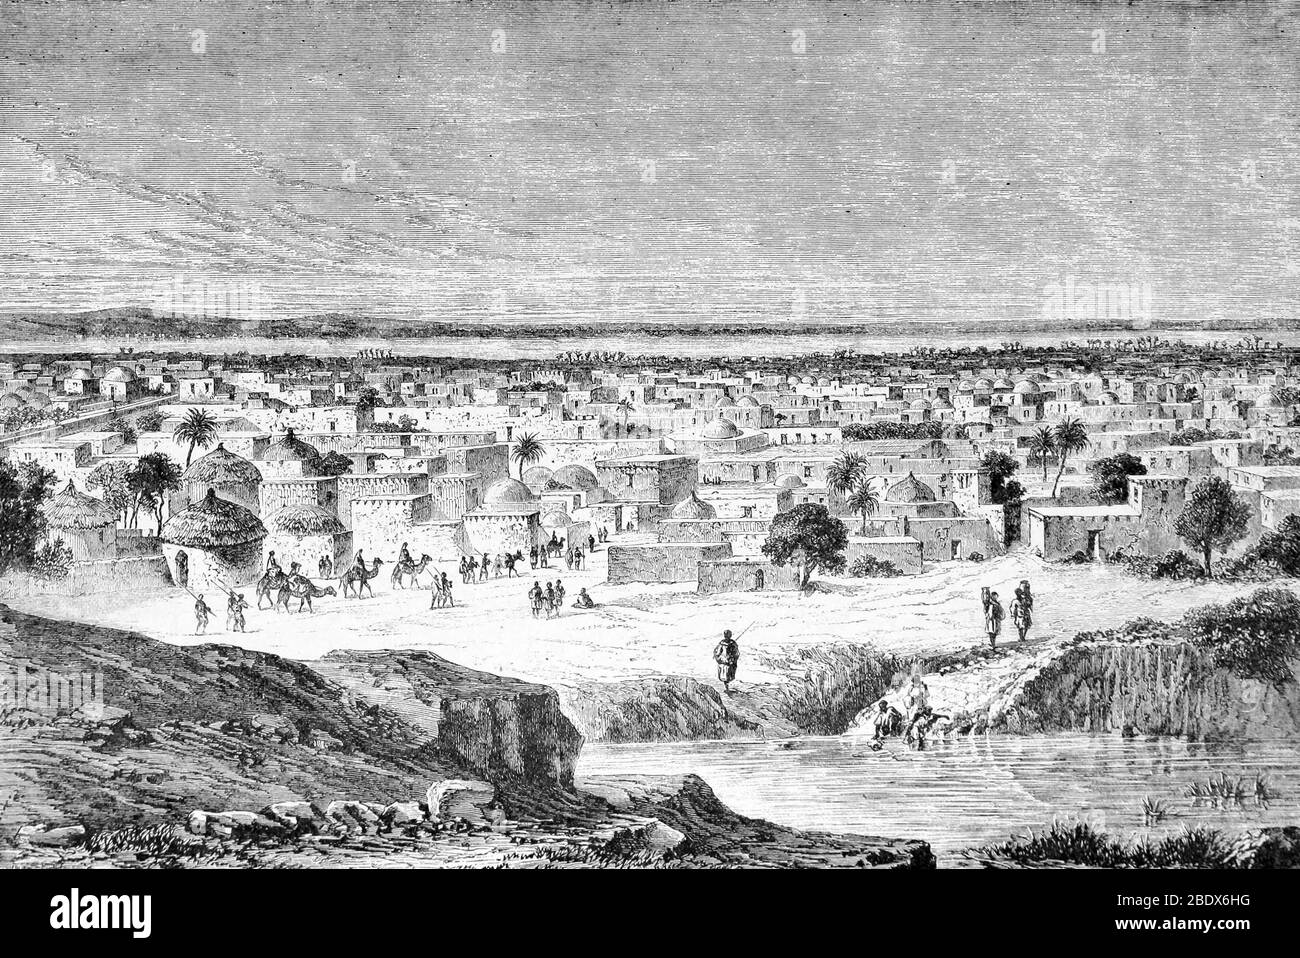 Afrique de l'Ouest, Kano, XIXe siècle Banque D'Images